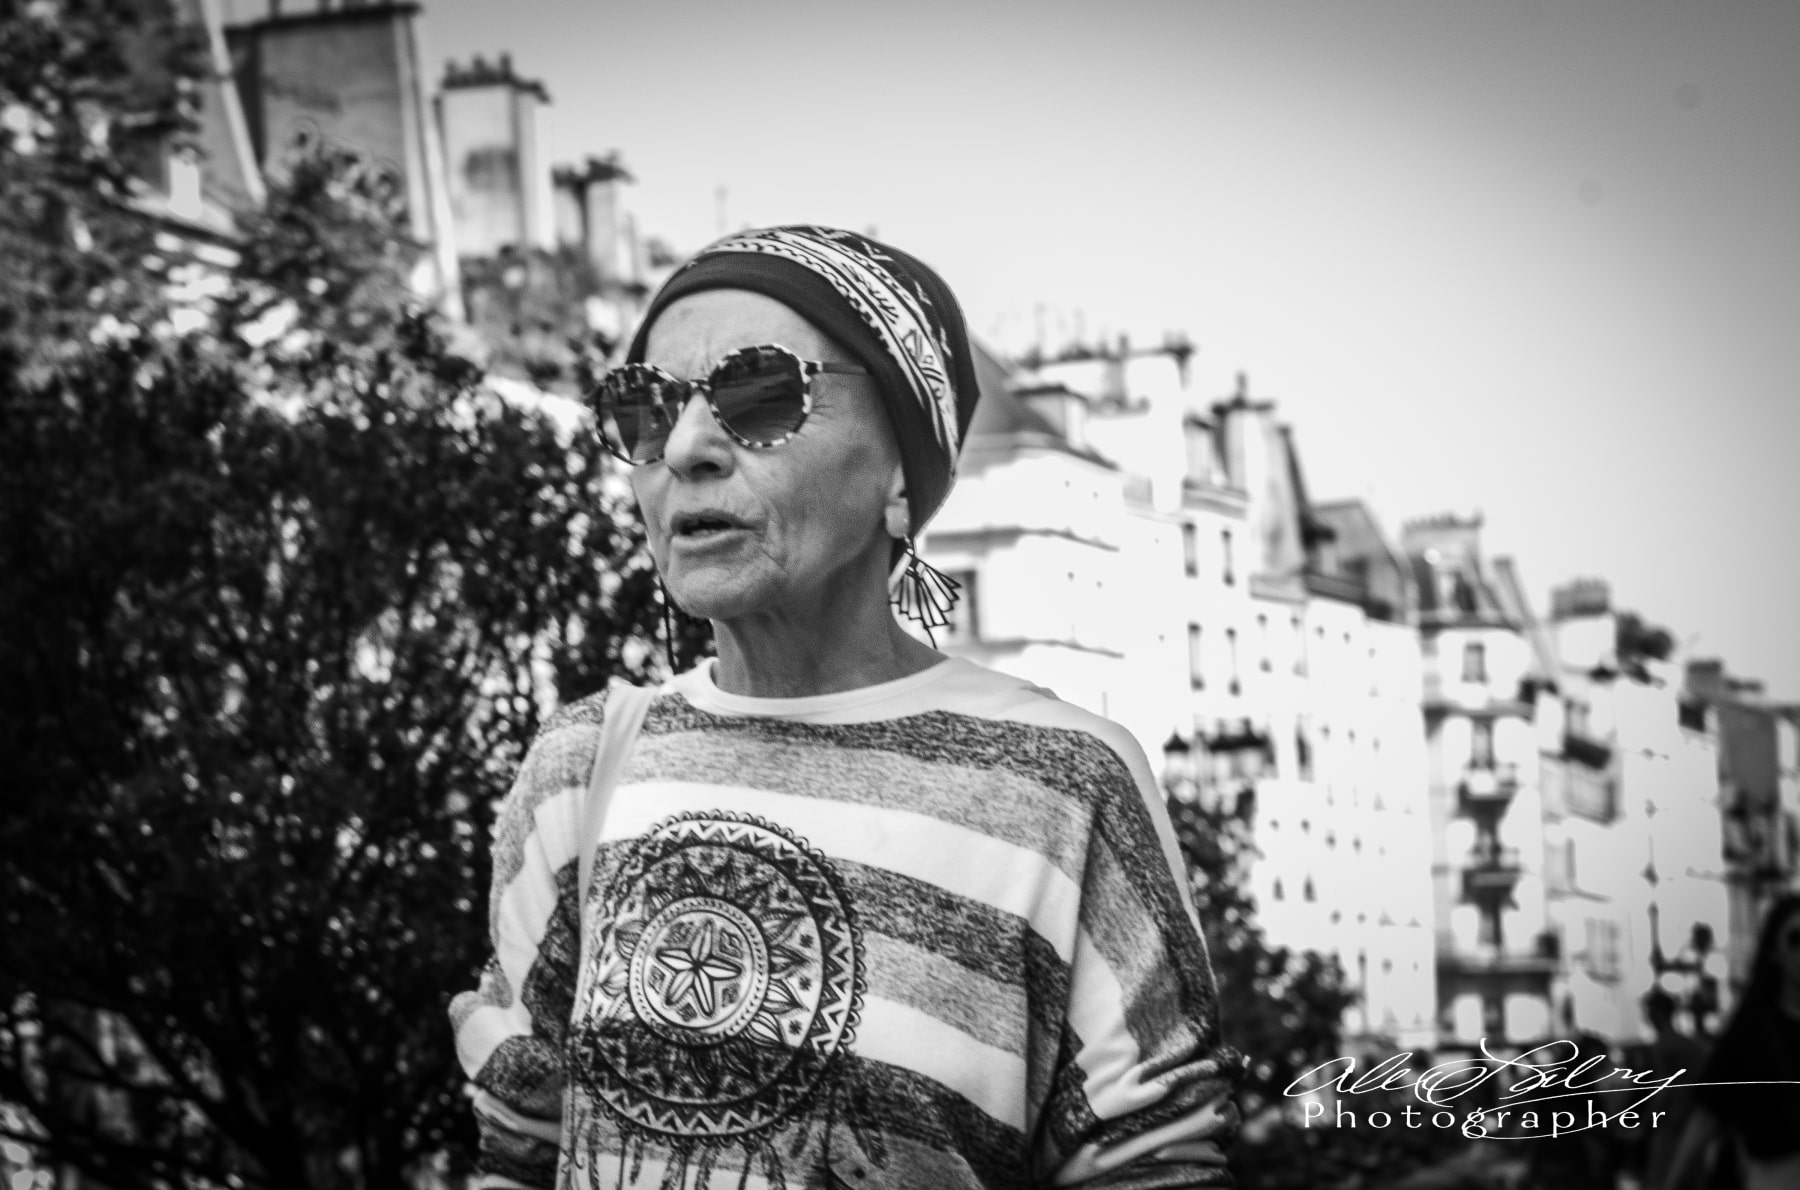 Woman, Marais Quarter, Paris, France